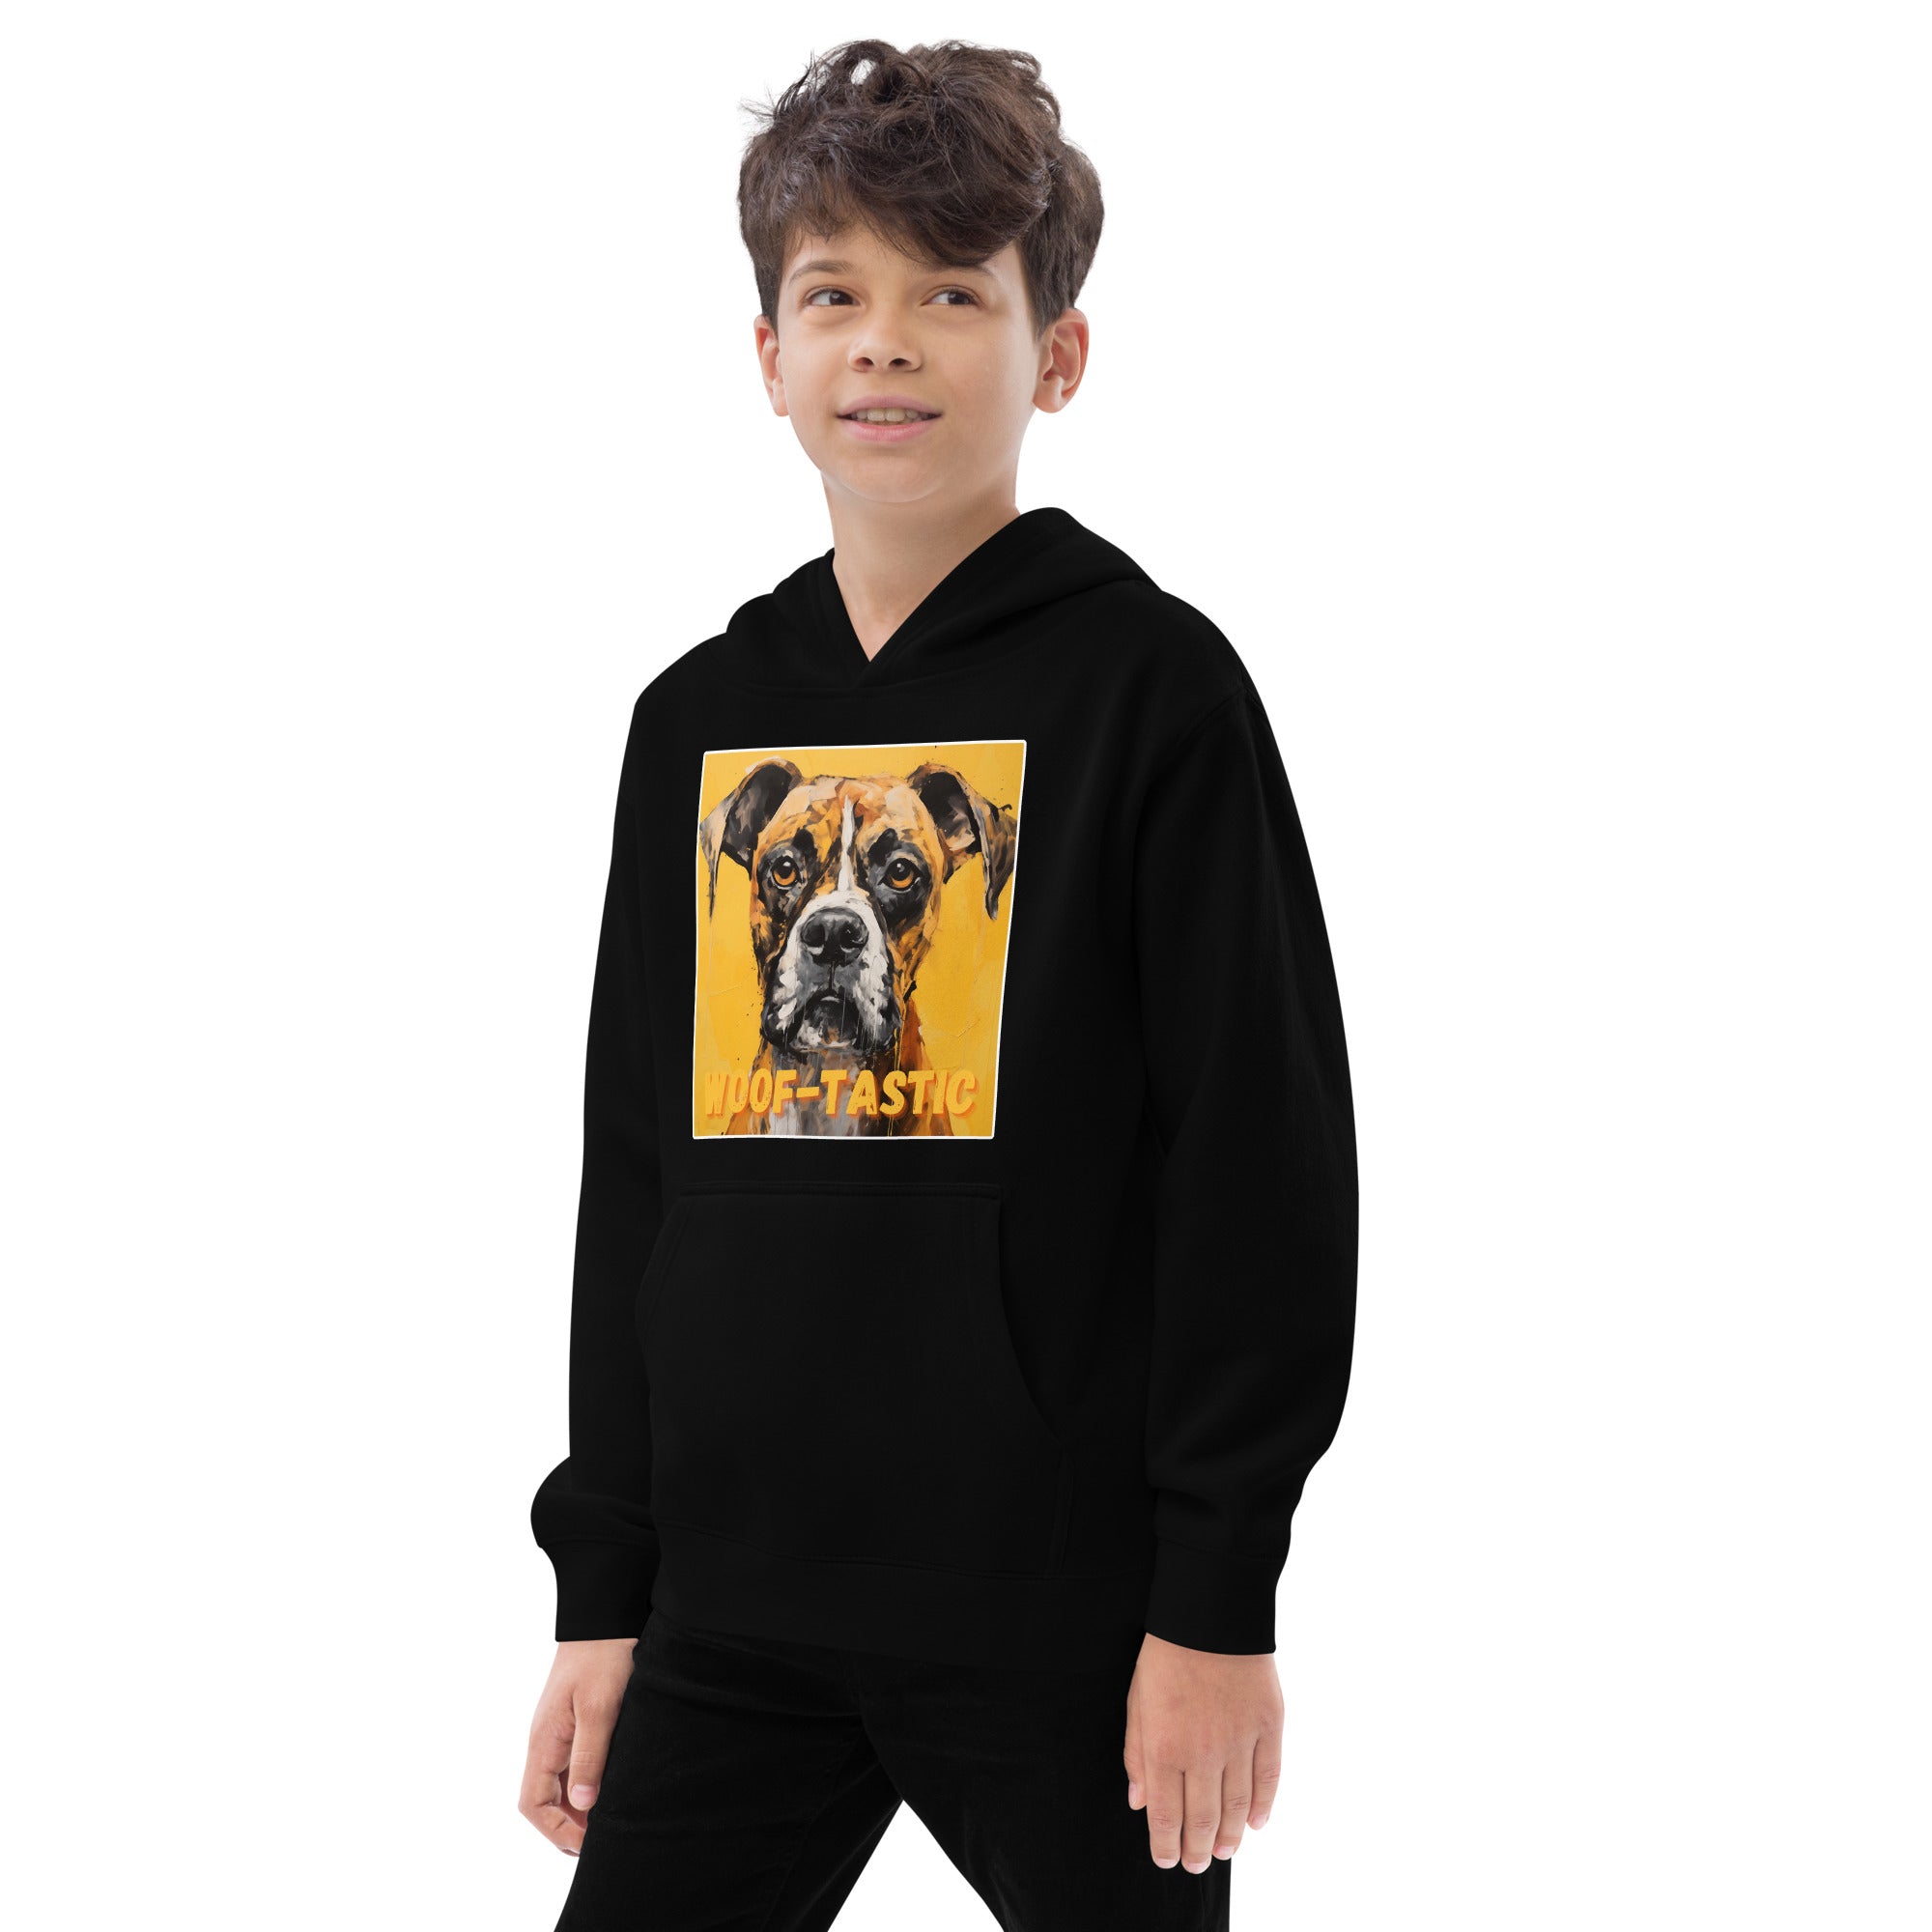 Kids fleece hoodie Woof-tastic Boxer